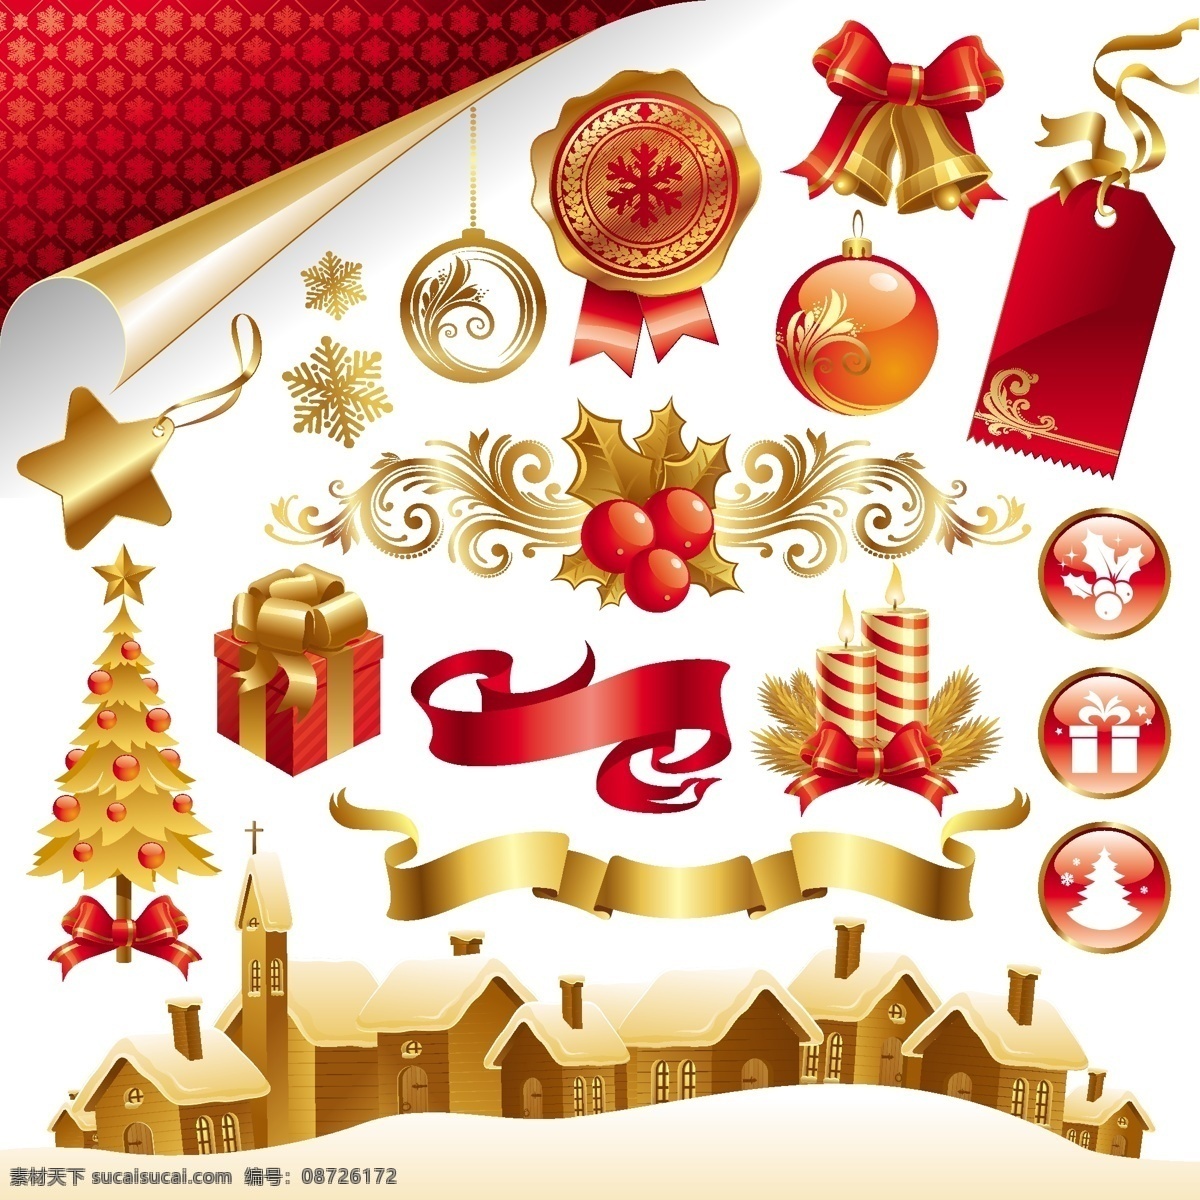 金色 华丽 圣诞节 元素 矢量 彩带 彩球 挂牌 蜡烛 礼品盒 铃铛 圣诞树 图标 节日素材